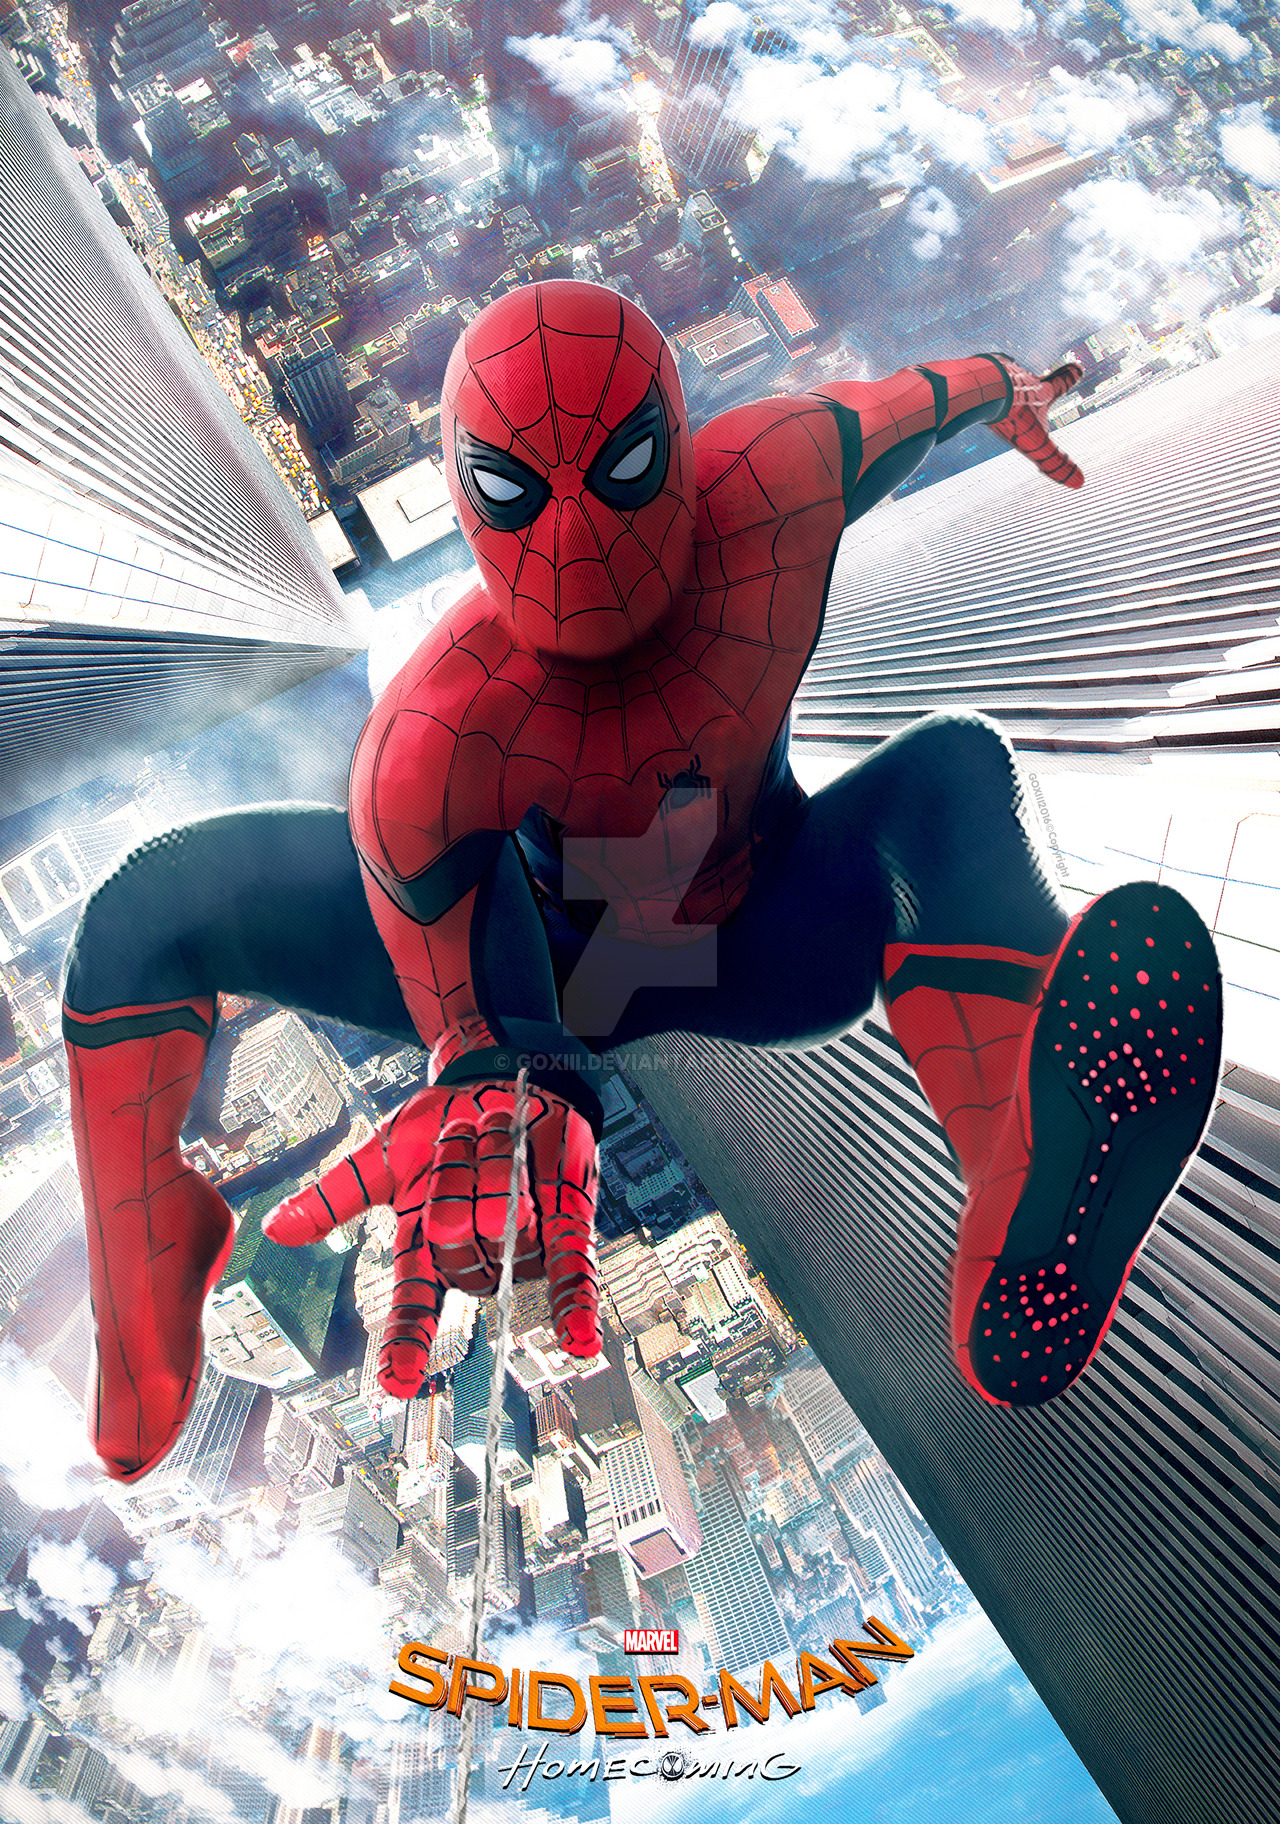 69+] Spiderman Homecoming Wallpaper - WallpaperSafari